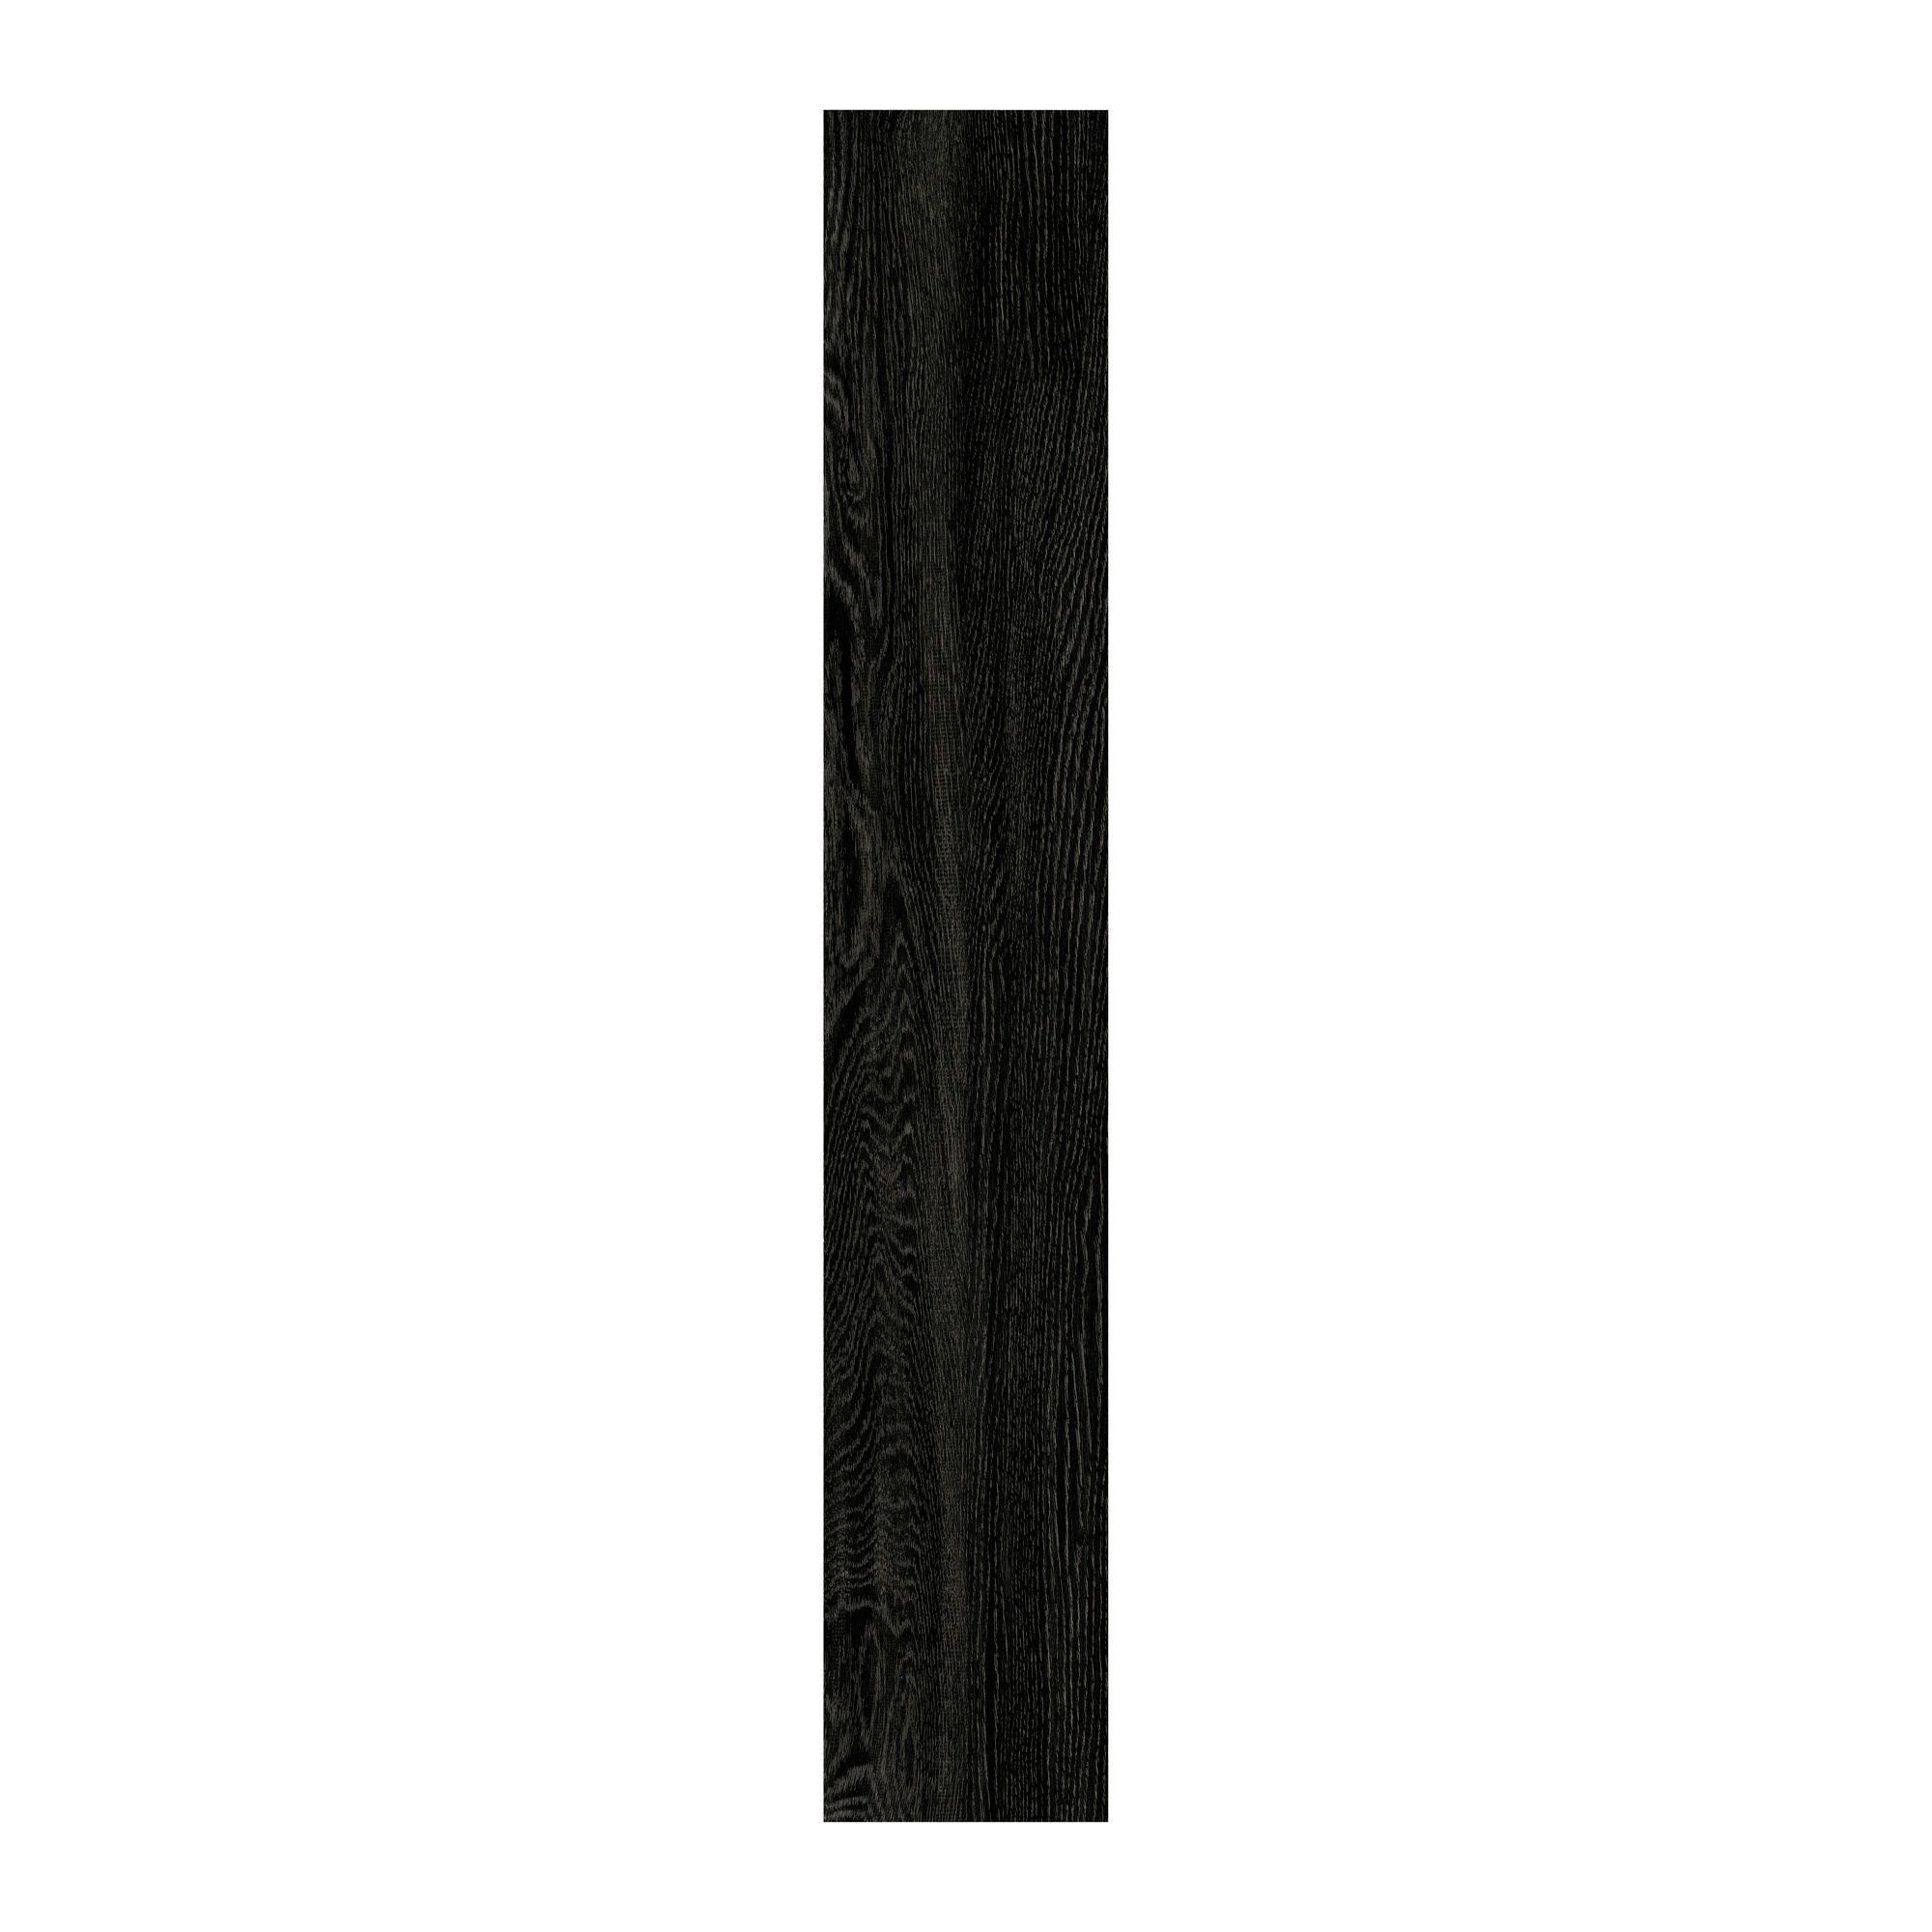 ColoursEbony Wood effect PVC Luxury vinyl click Luxury vinyl click flooring , (W)191mm